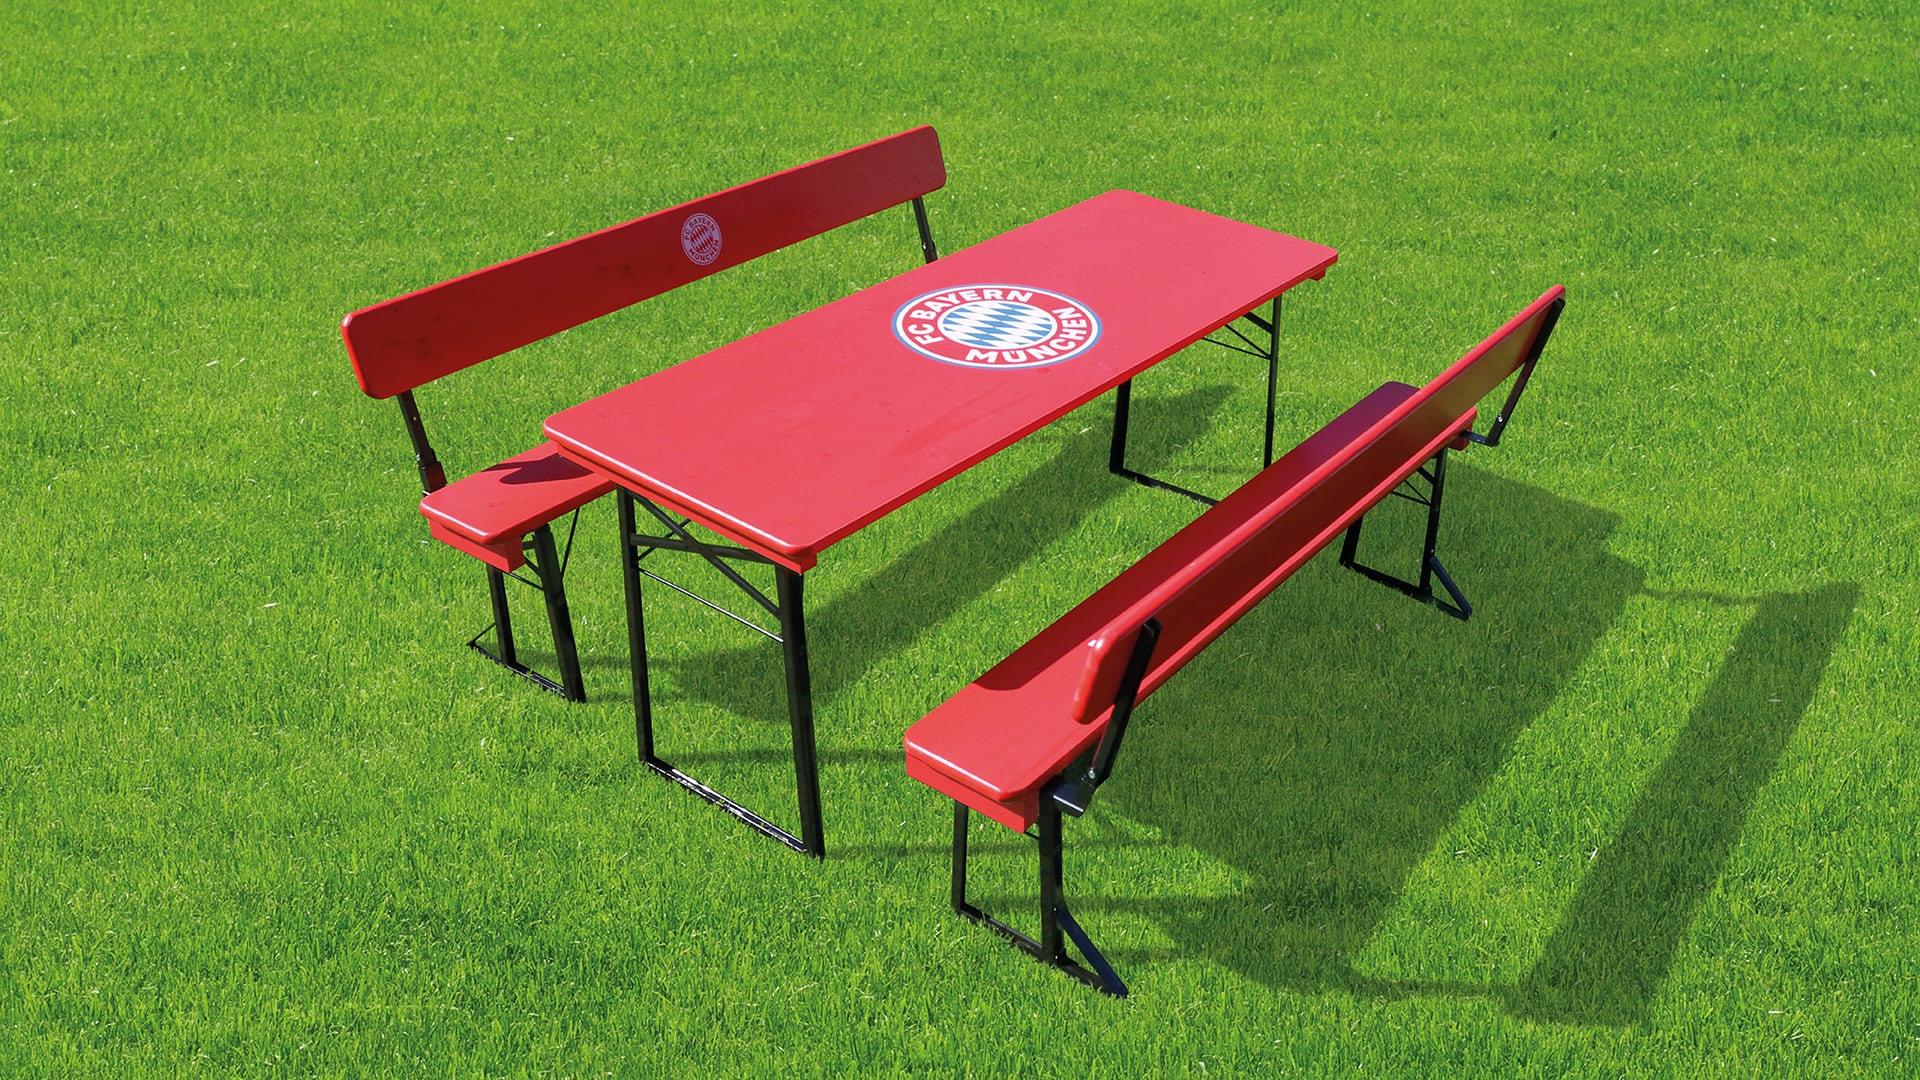 Die Bierzeltgarnitur mit Lehne im FC Bayern München Design auf dem Rasen.